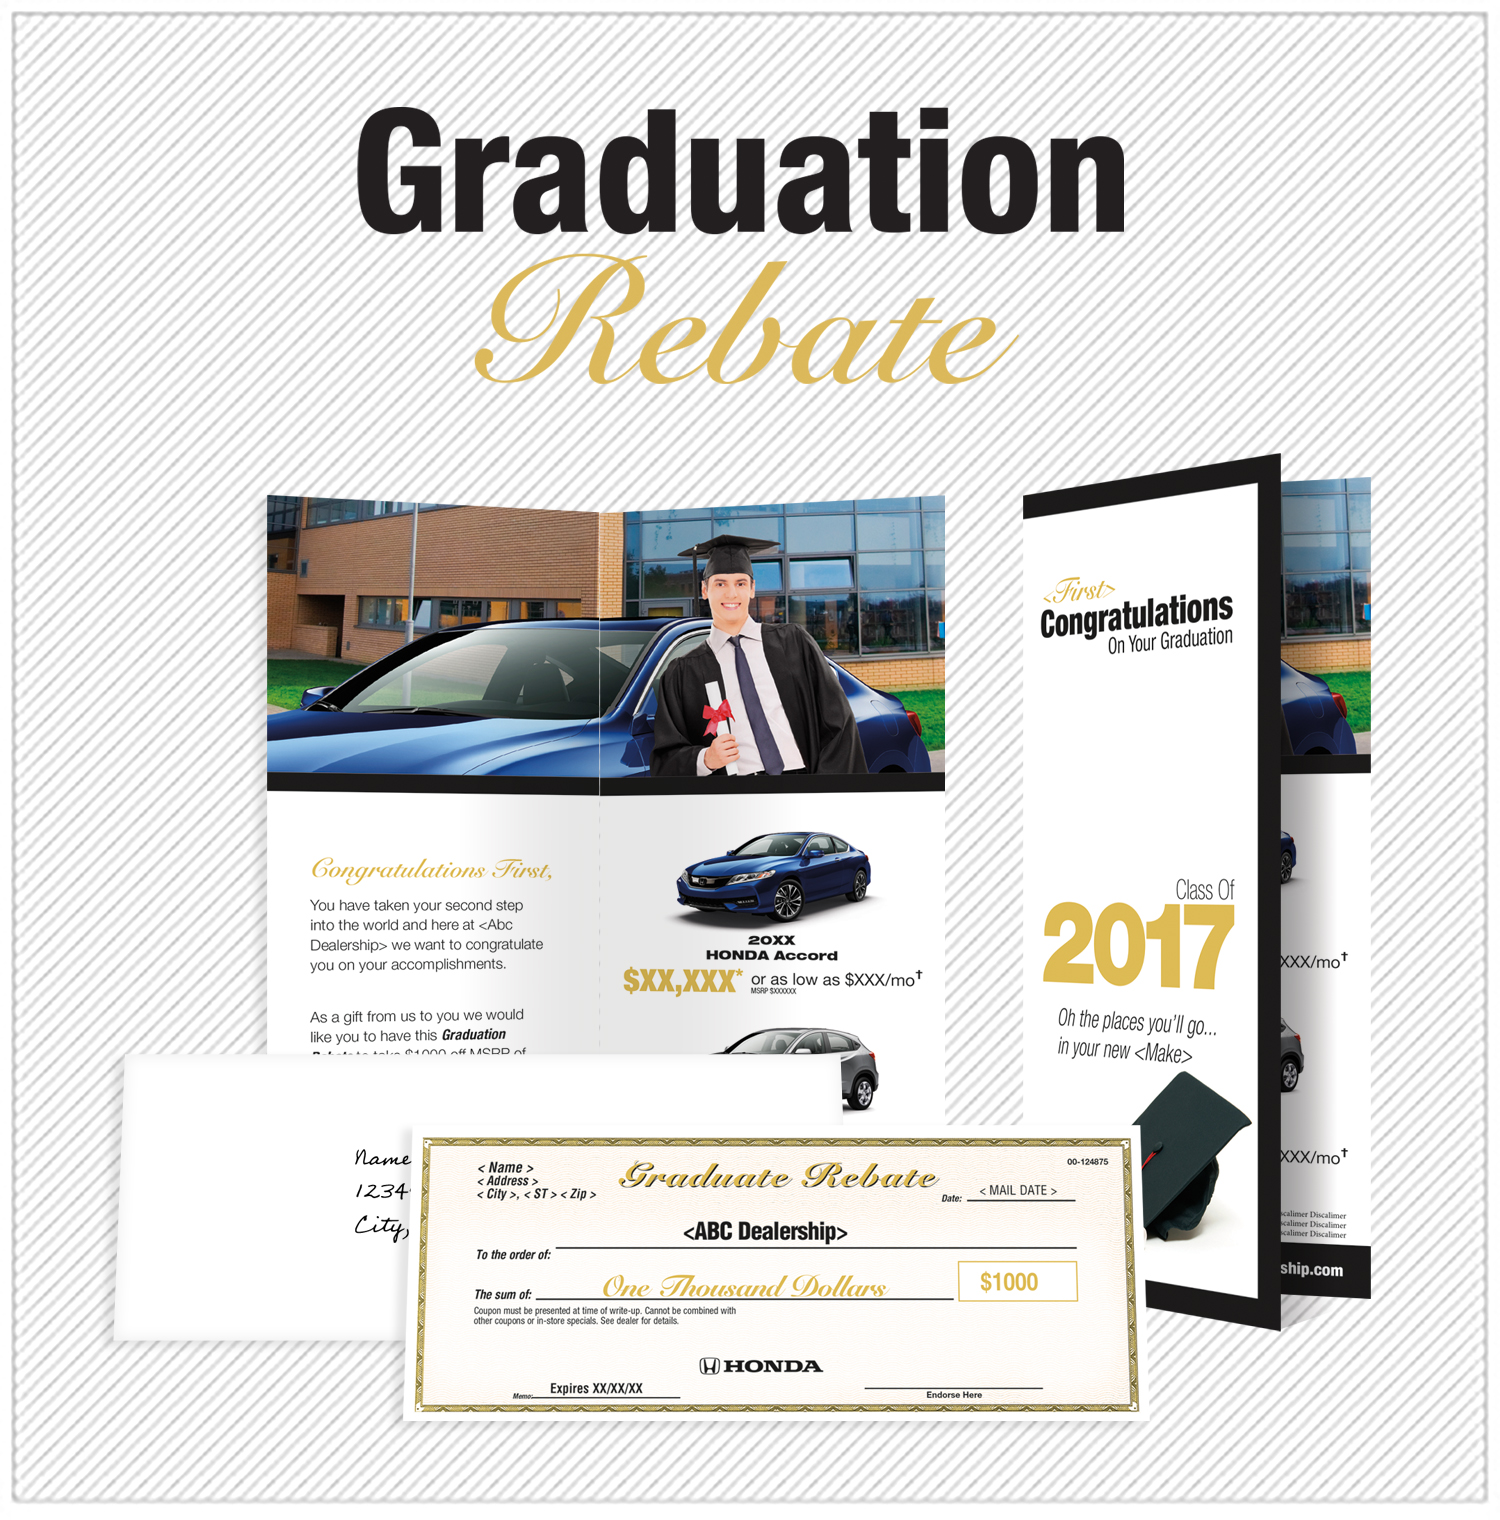 Graduation Rebate